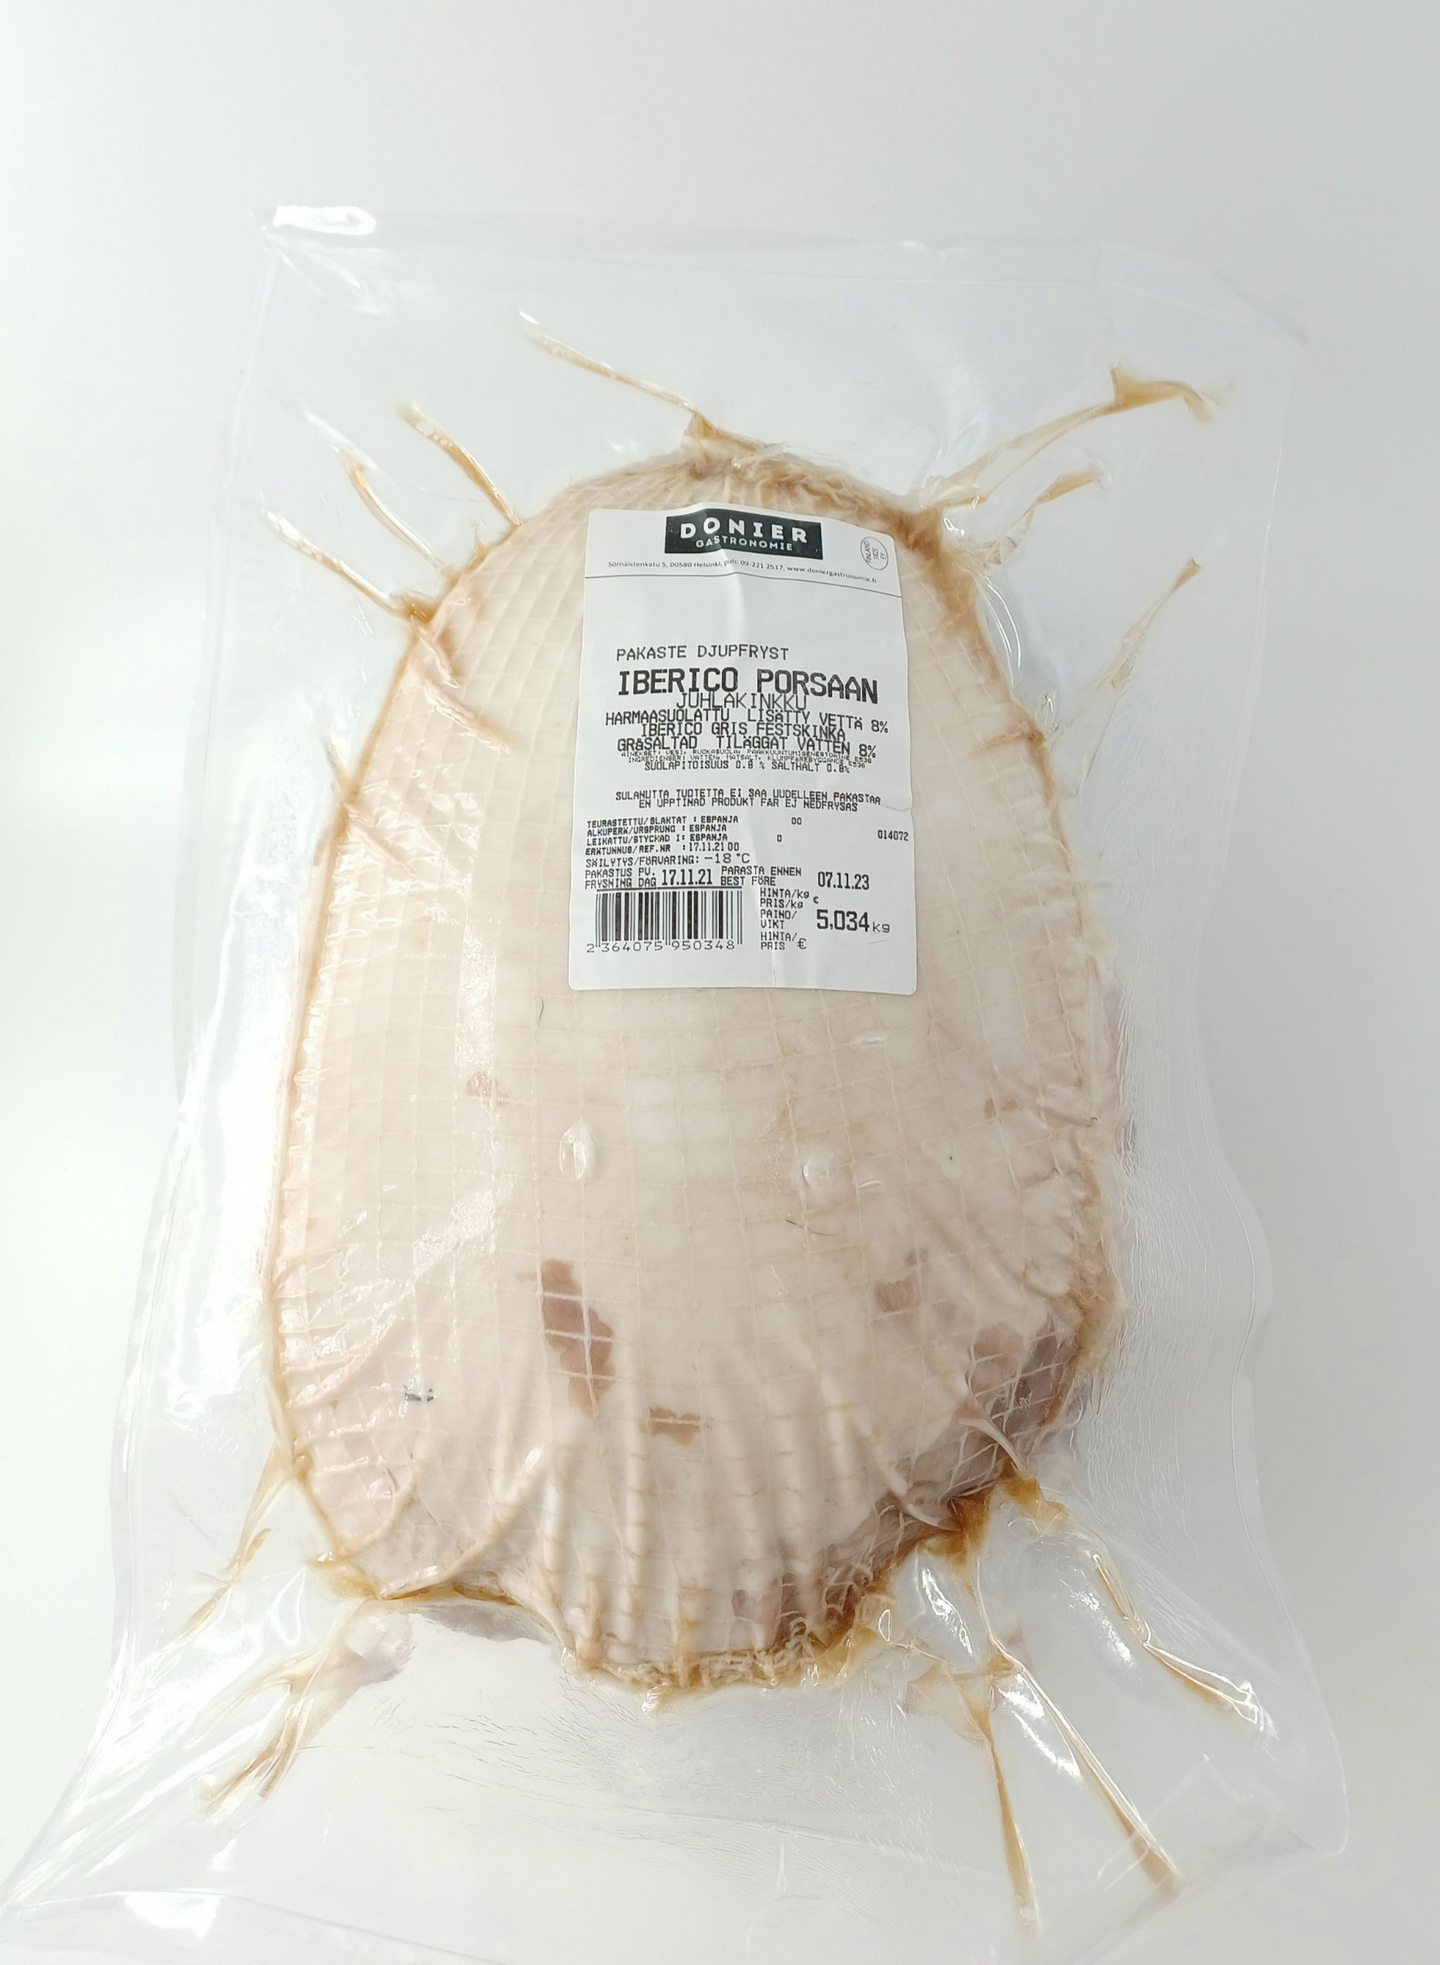 Donier gastronomie iberico porsaan harmaasuolattu juhlakinkku luuton n. 5kg  | K-Ruoka Verkkokauppa